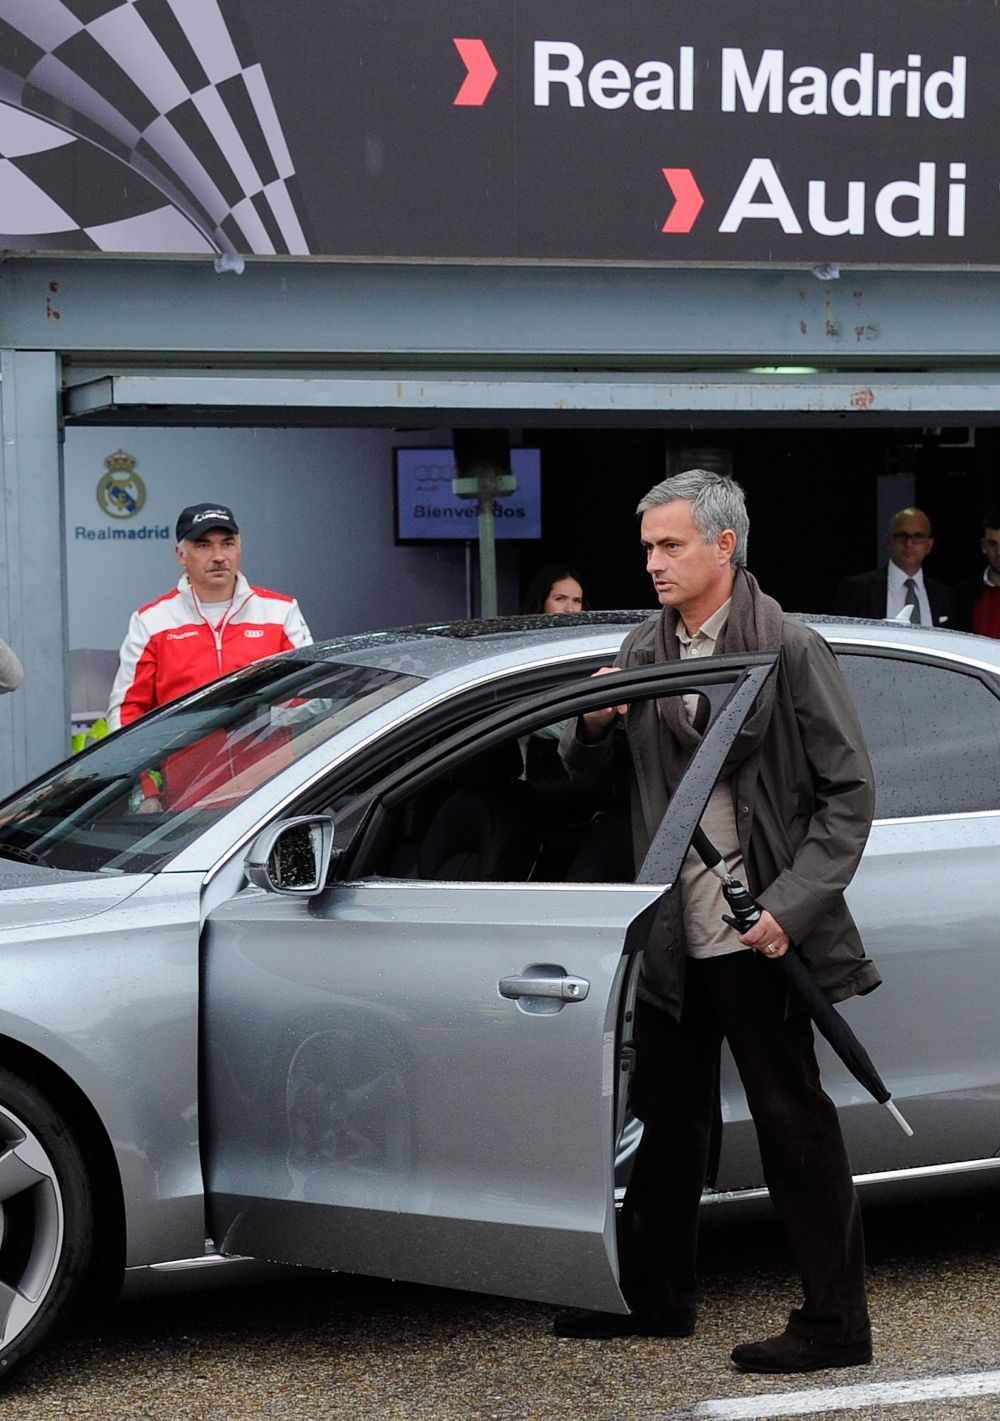 Colectia de masini din viata lui Mourinho: ce cadou i-a facut Abramovici dupa ce l-a dat afara de la Chelsea si cum arata masina care l-a bagat in spital_6